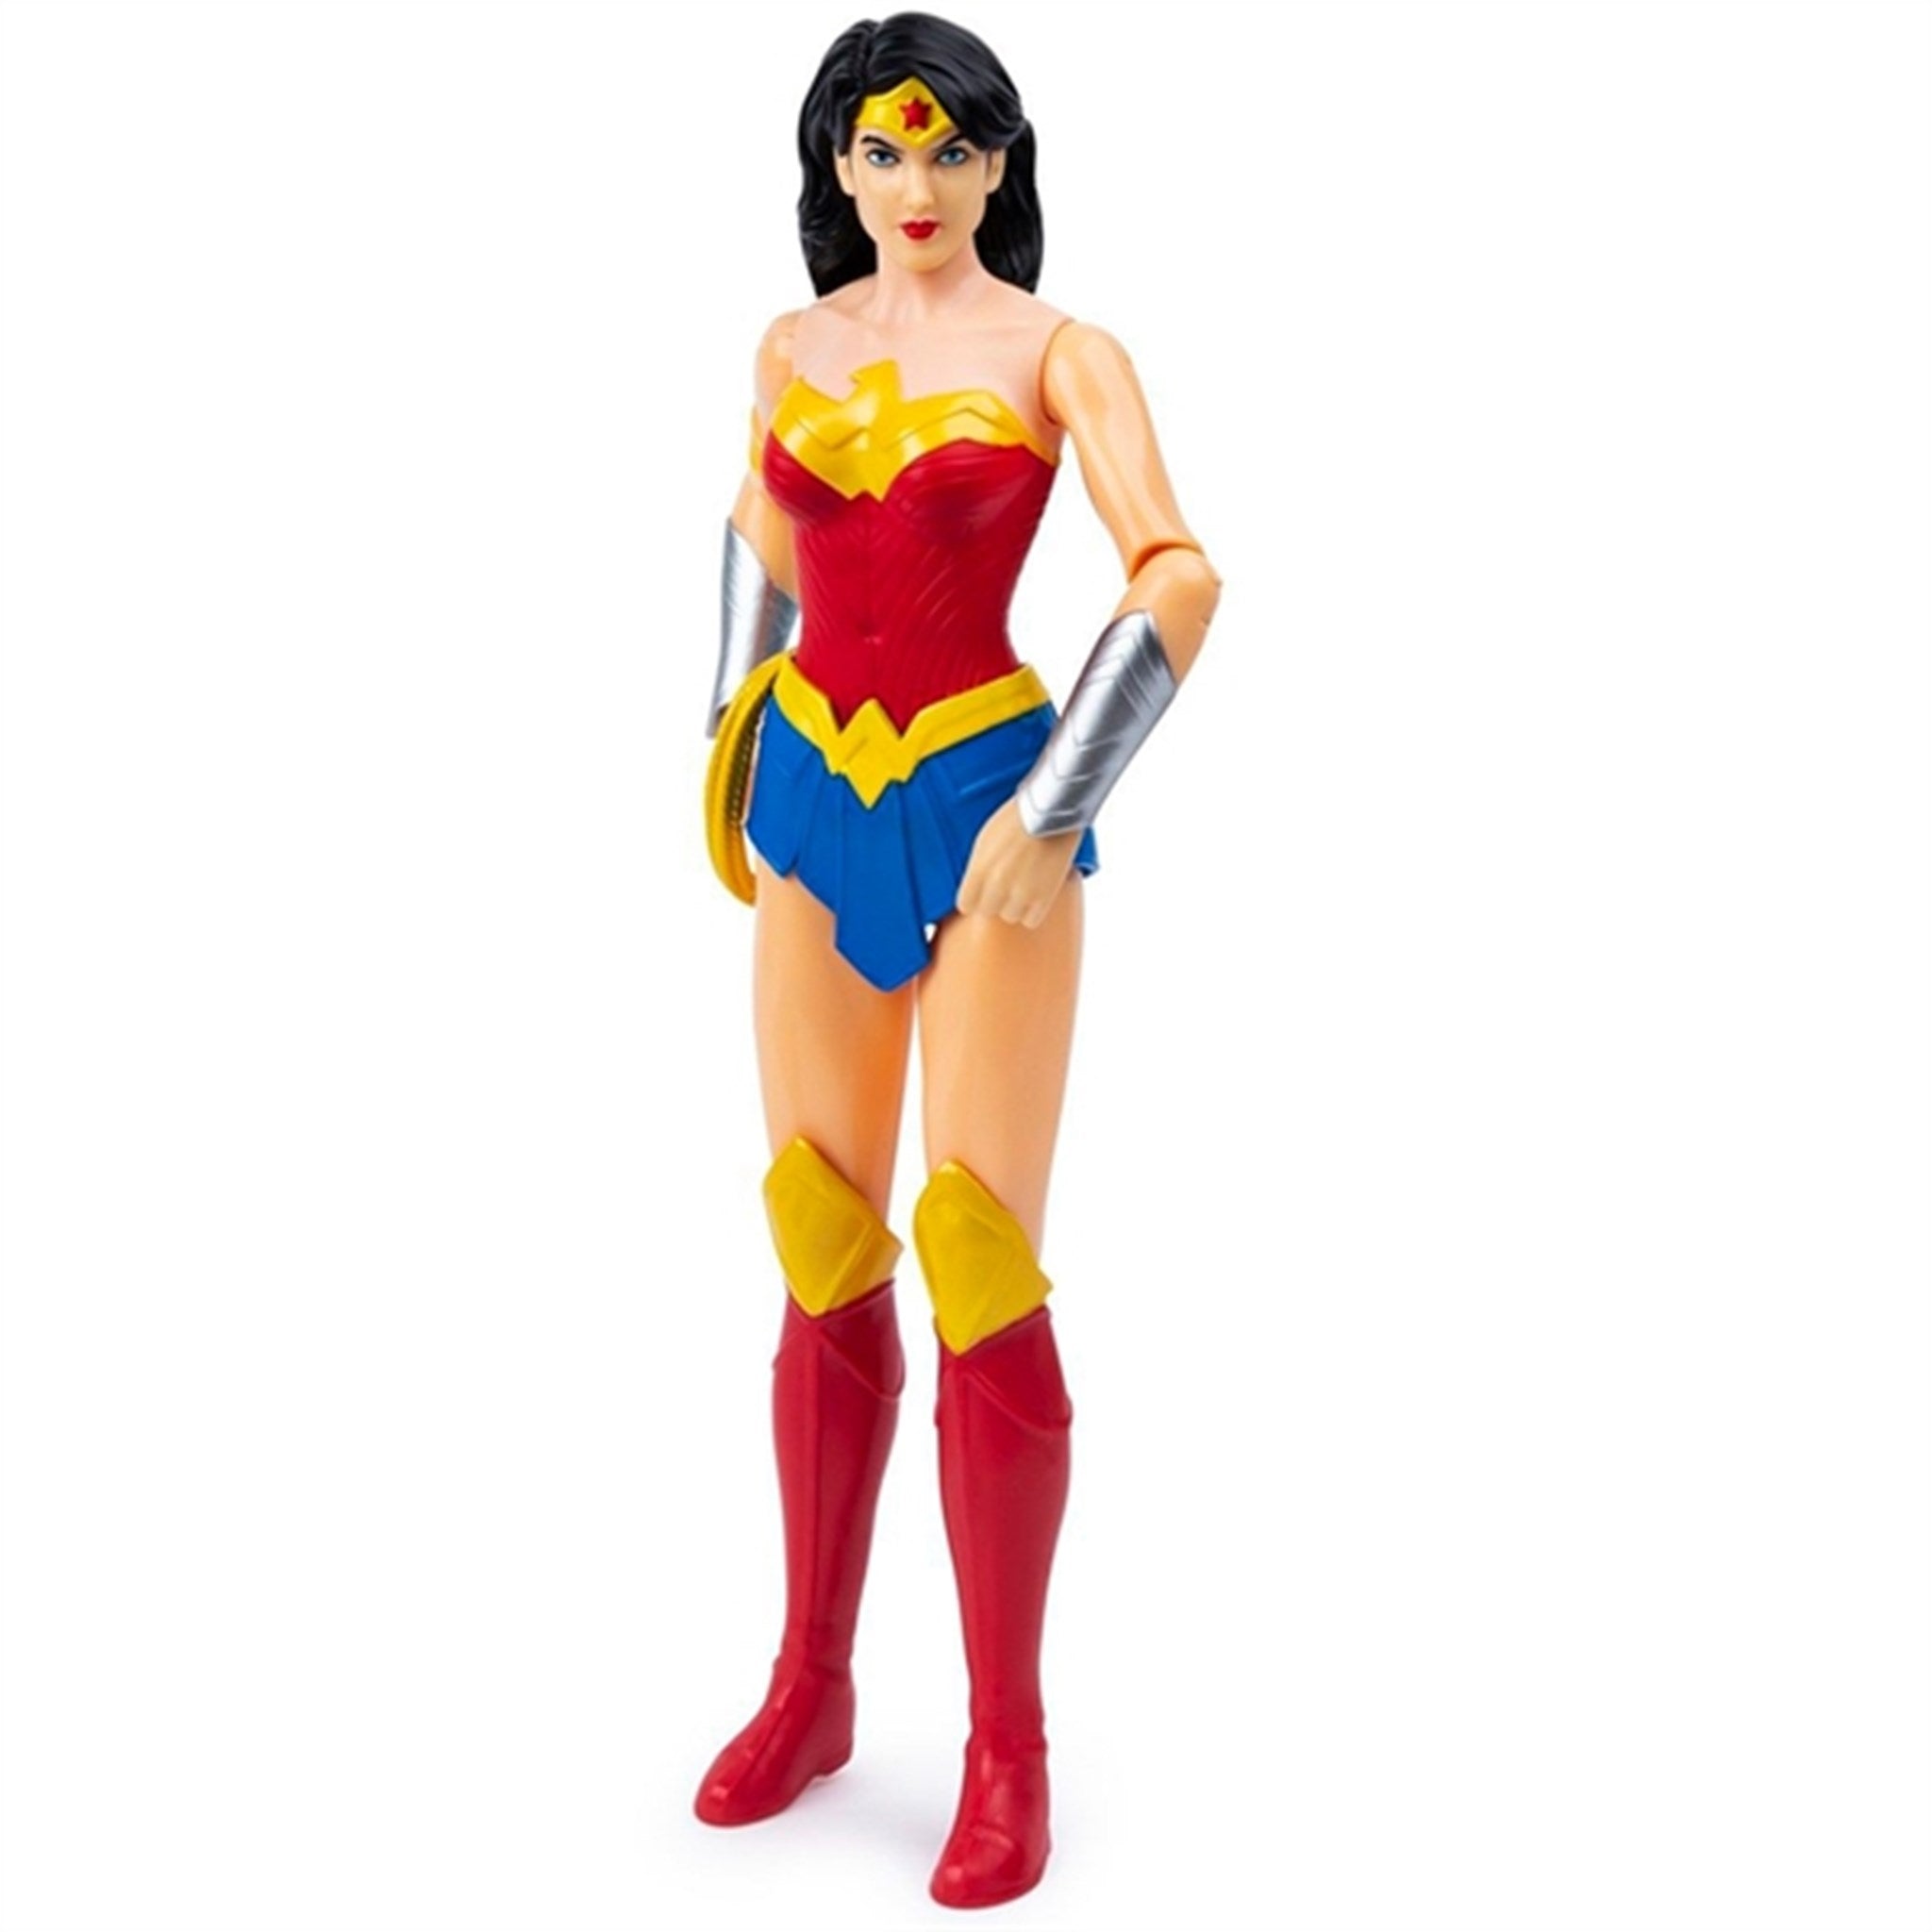 Batman & DC Universe Wonder Woman 30 cm